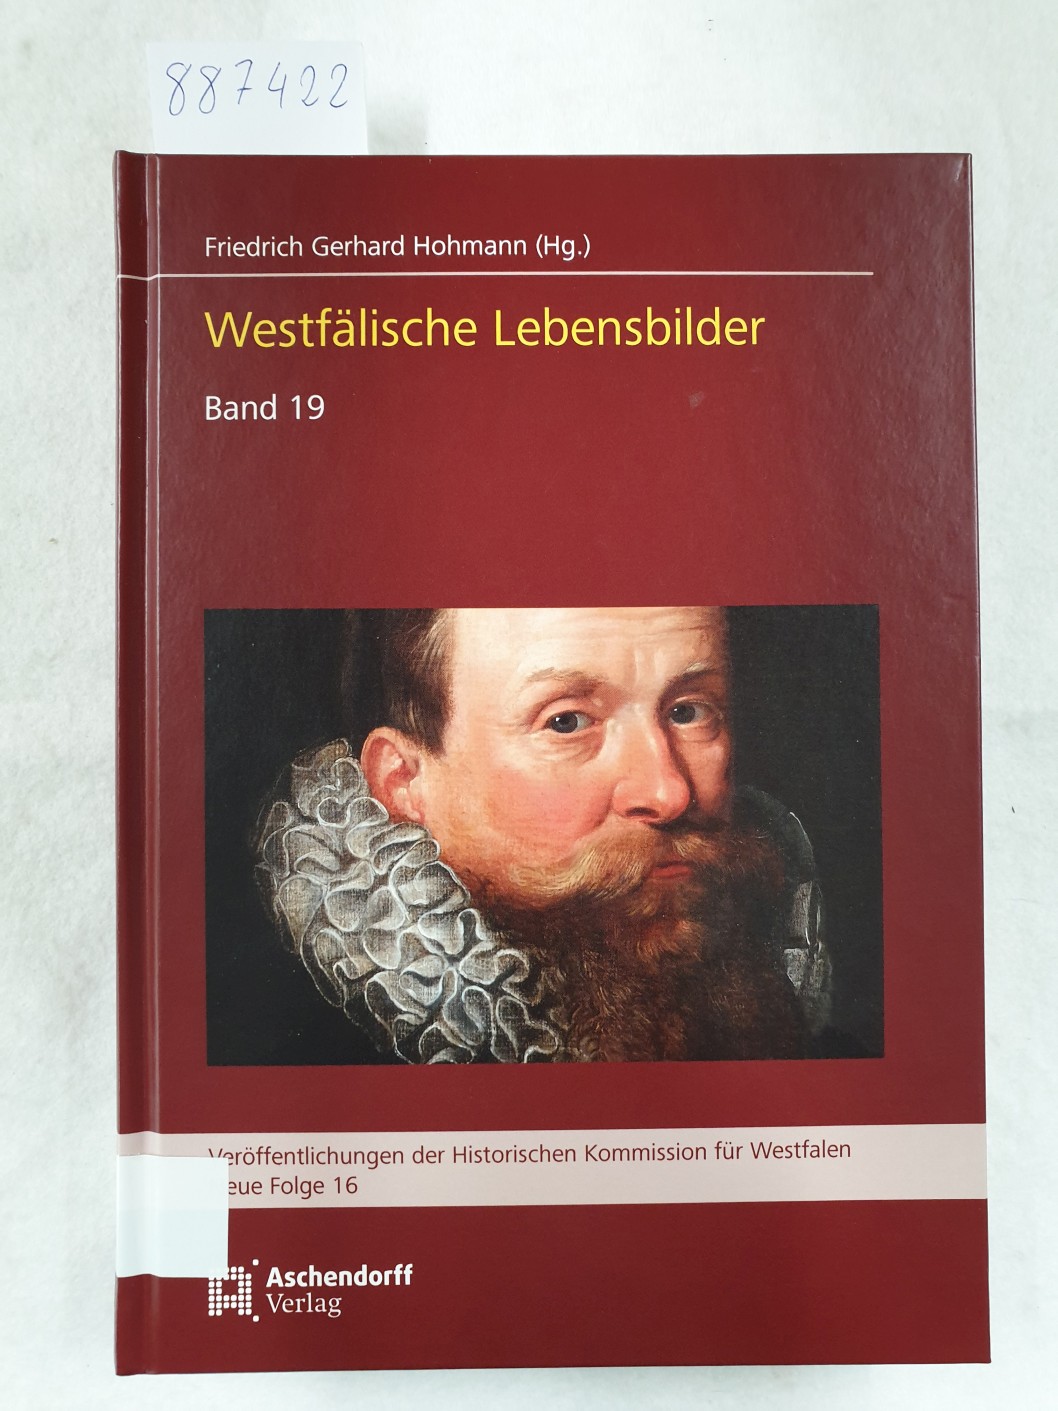 Westfälische Lebensbilder - Band 19 : Veröffentlichungen der Historischen Kommission für Westfalen - Neue Folge 16 : - Hohmann, Friedrich Gerhard (Hrsg.)